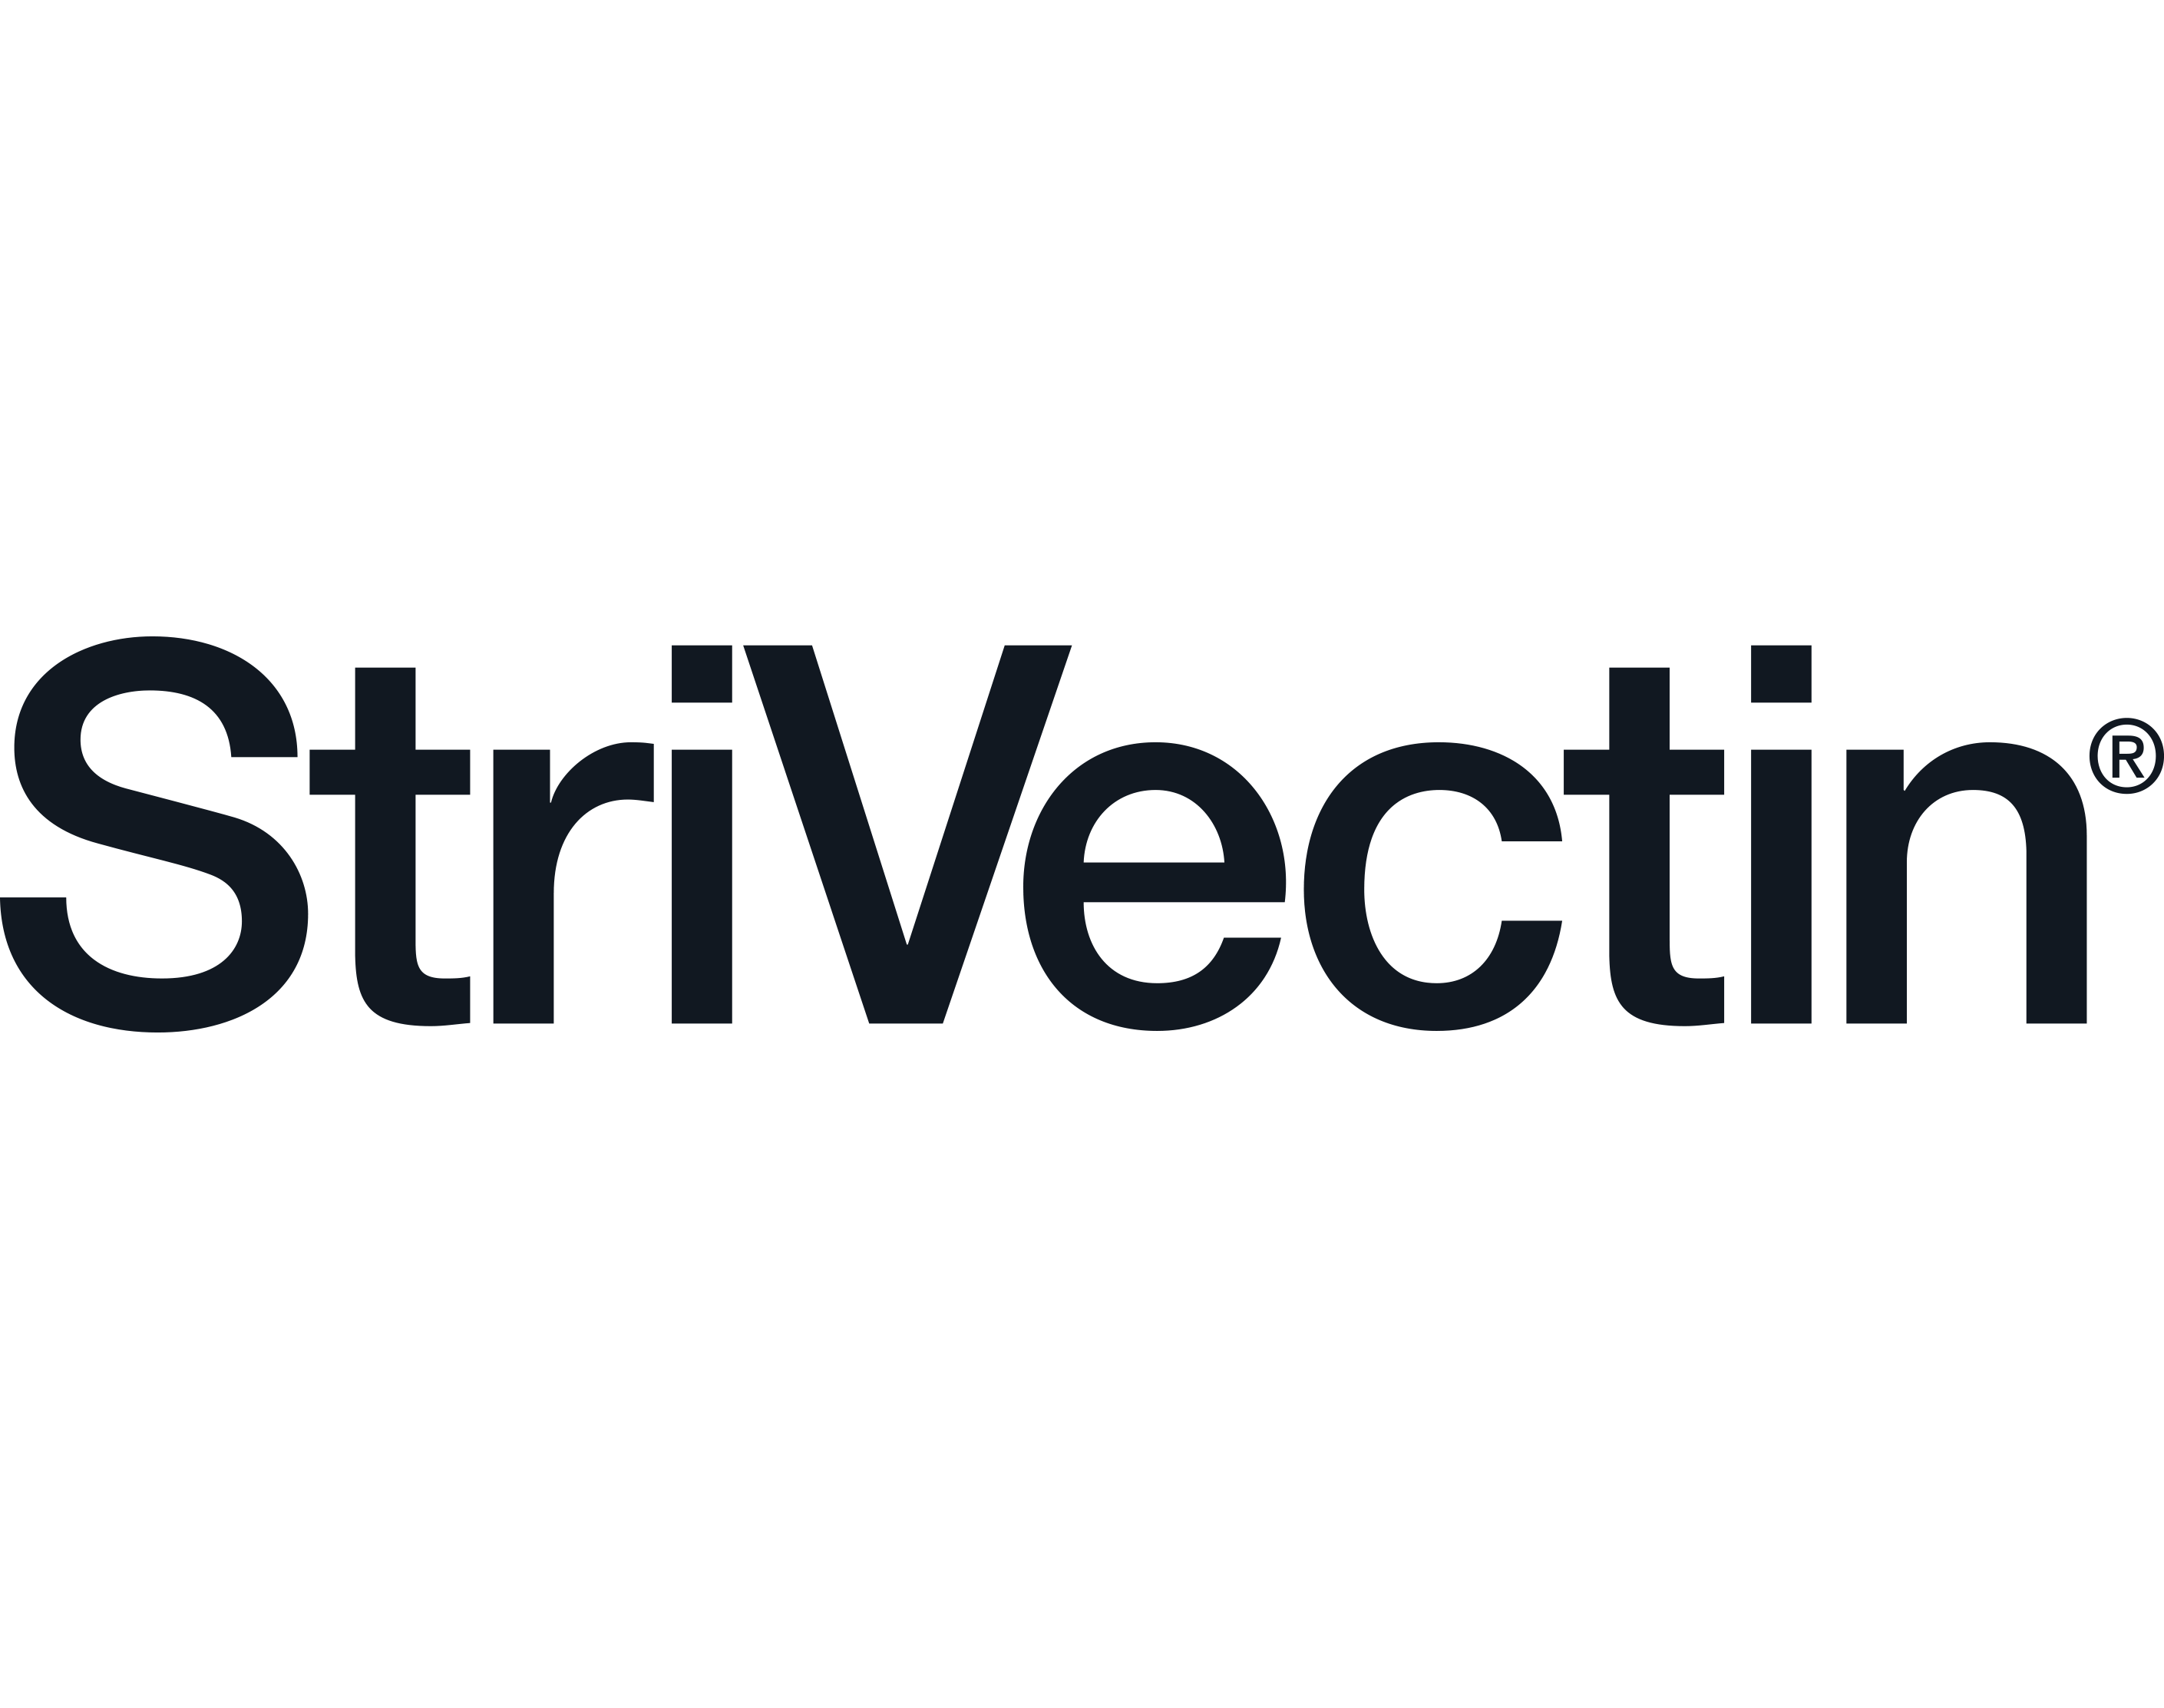 StriVectin Logo